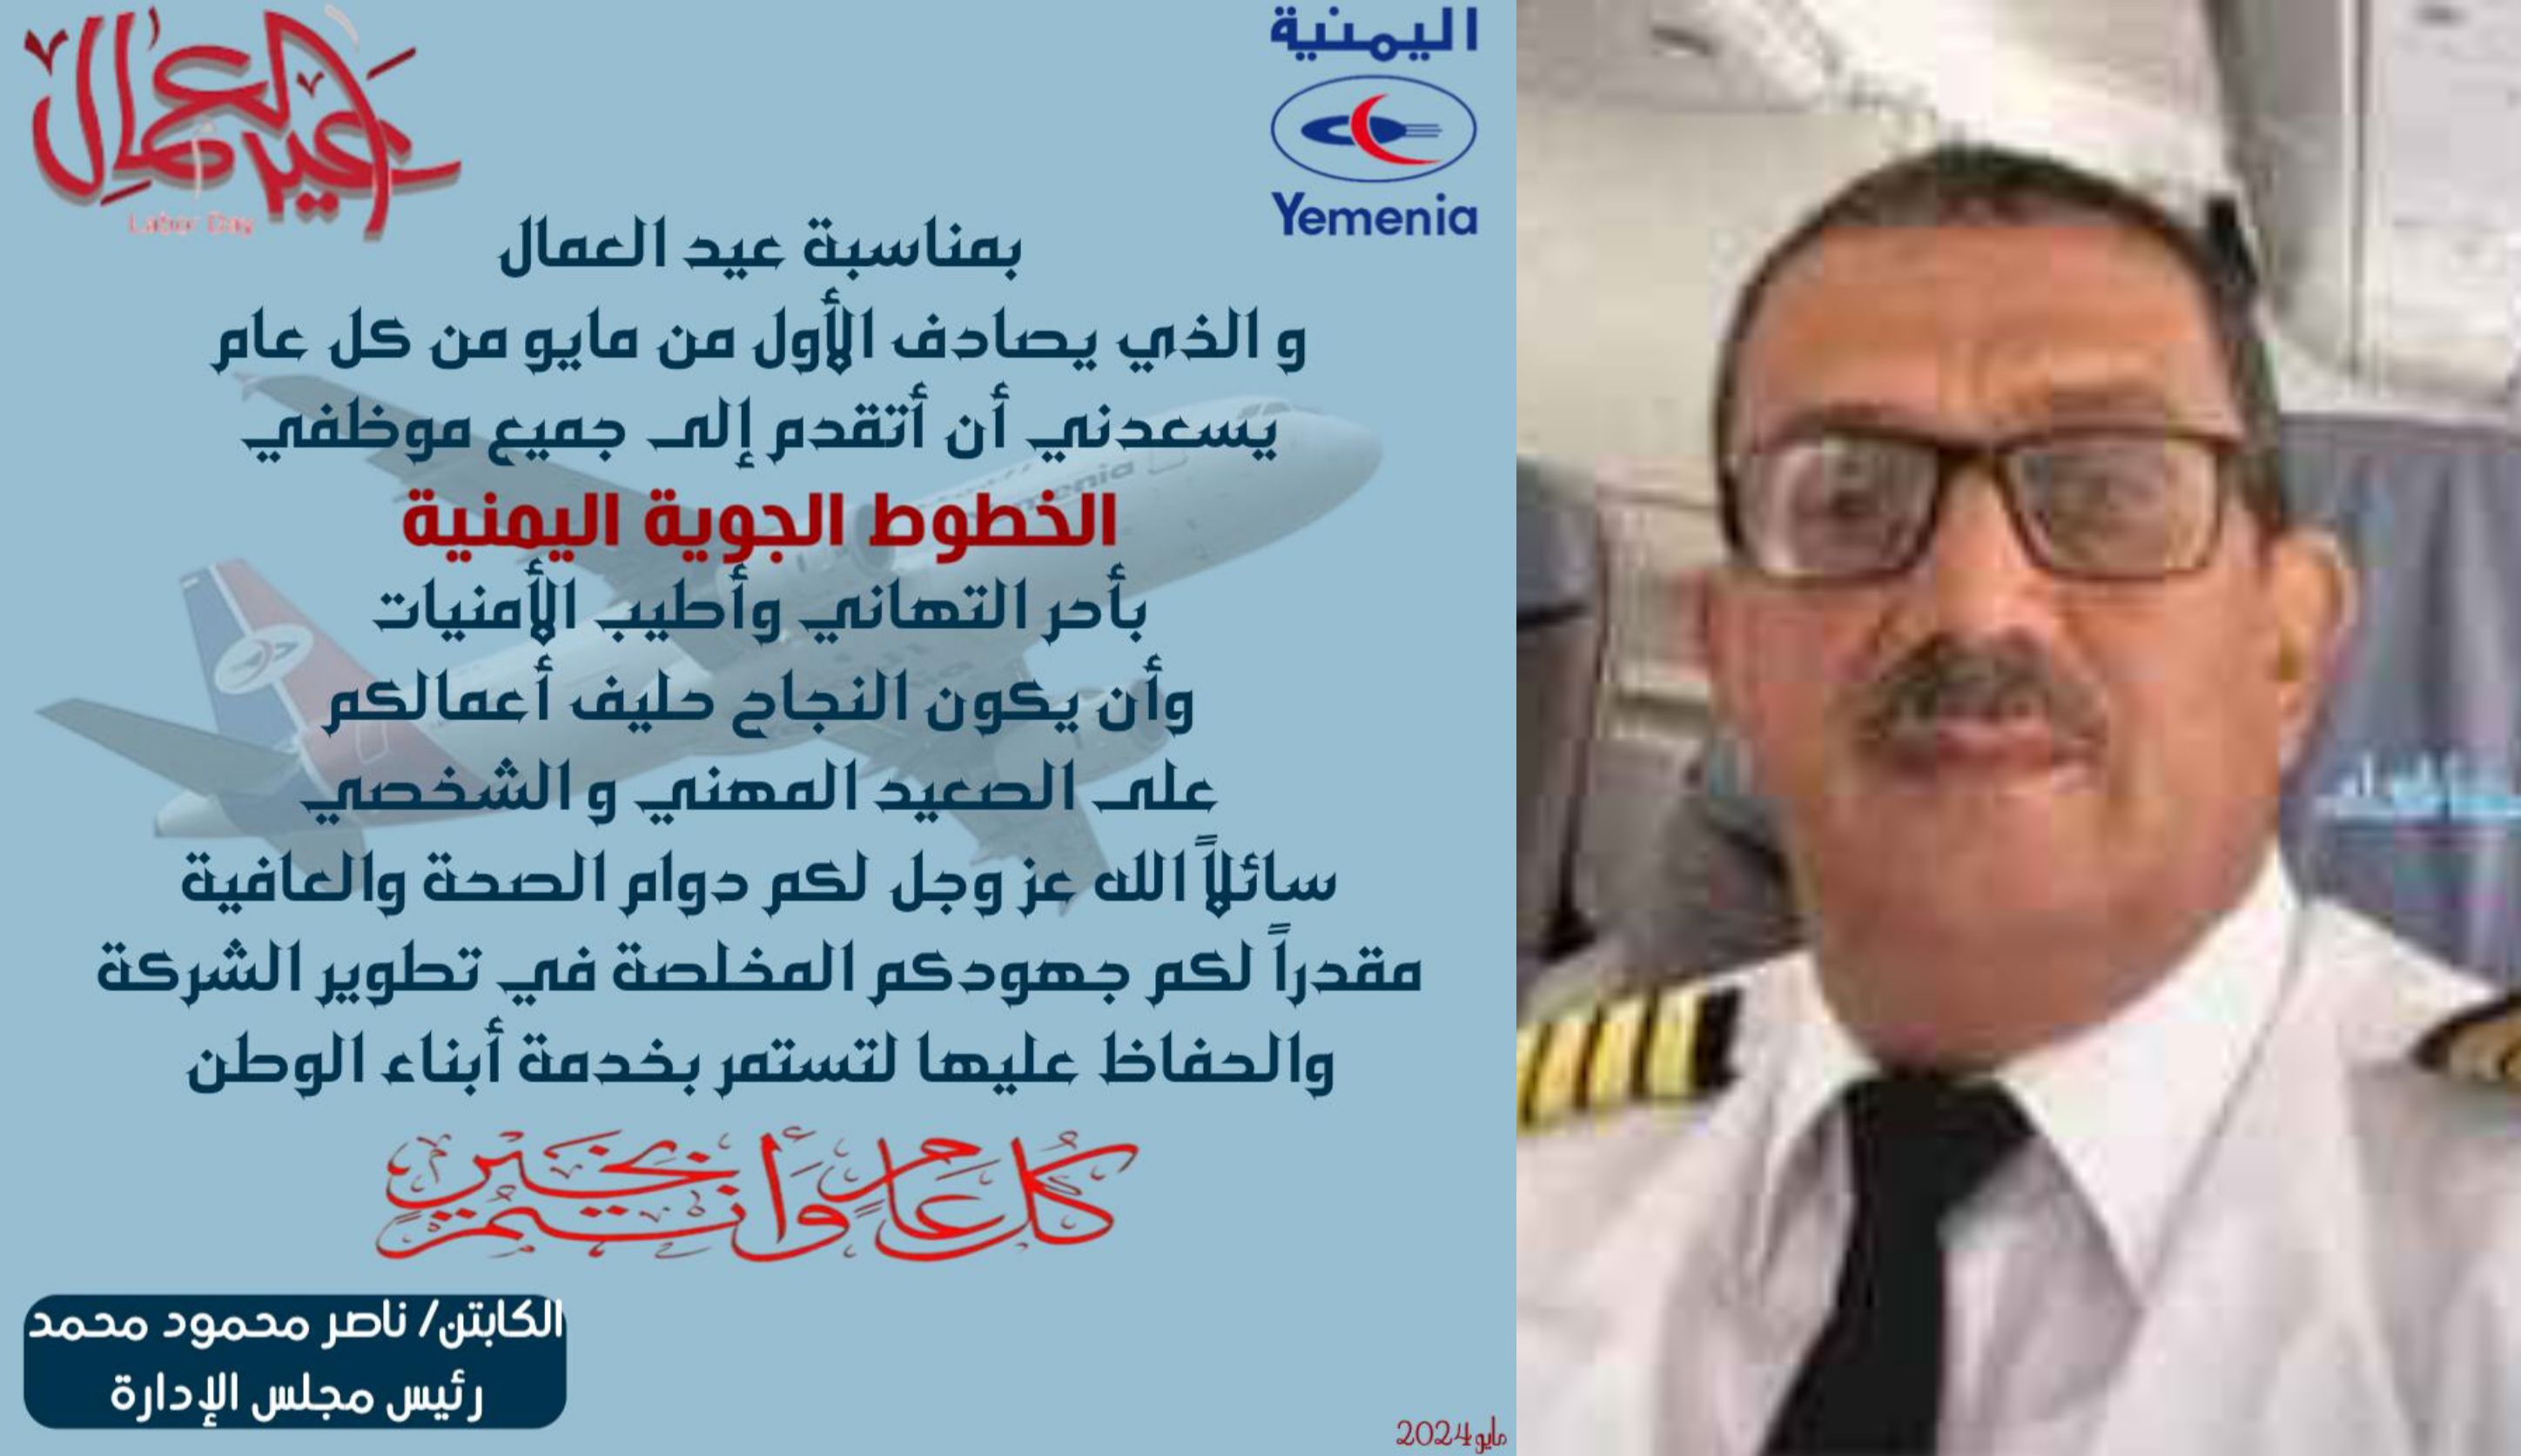 الكابتن ناصر محمود يهنئ موظفي اليمنية وكافة عمال اليمن بمناسبة عيد العمال العالمي